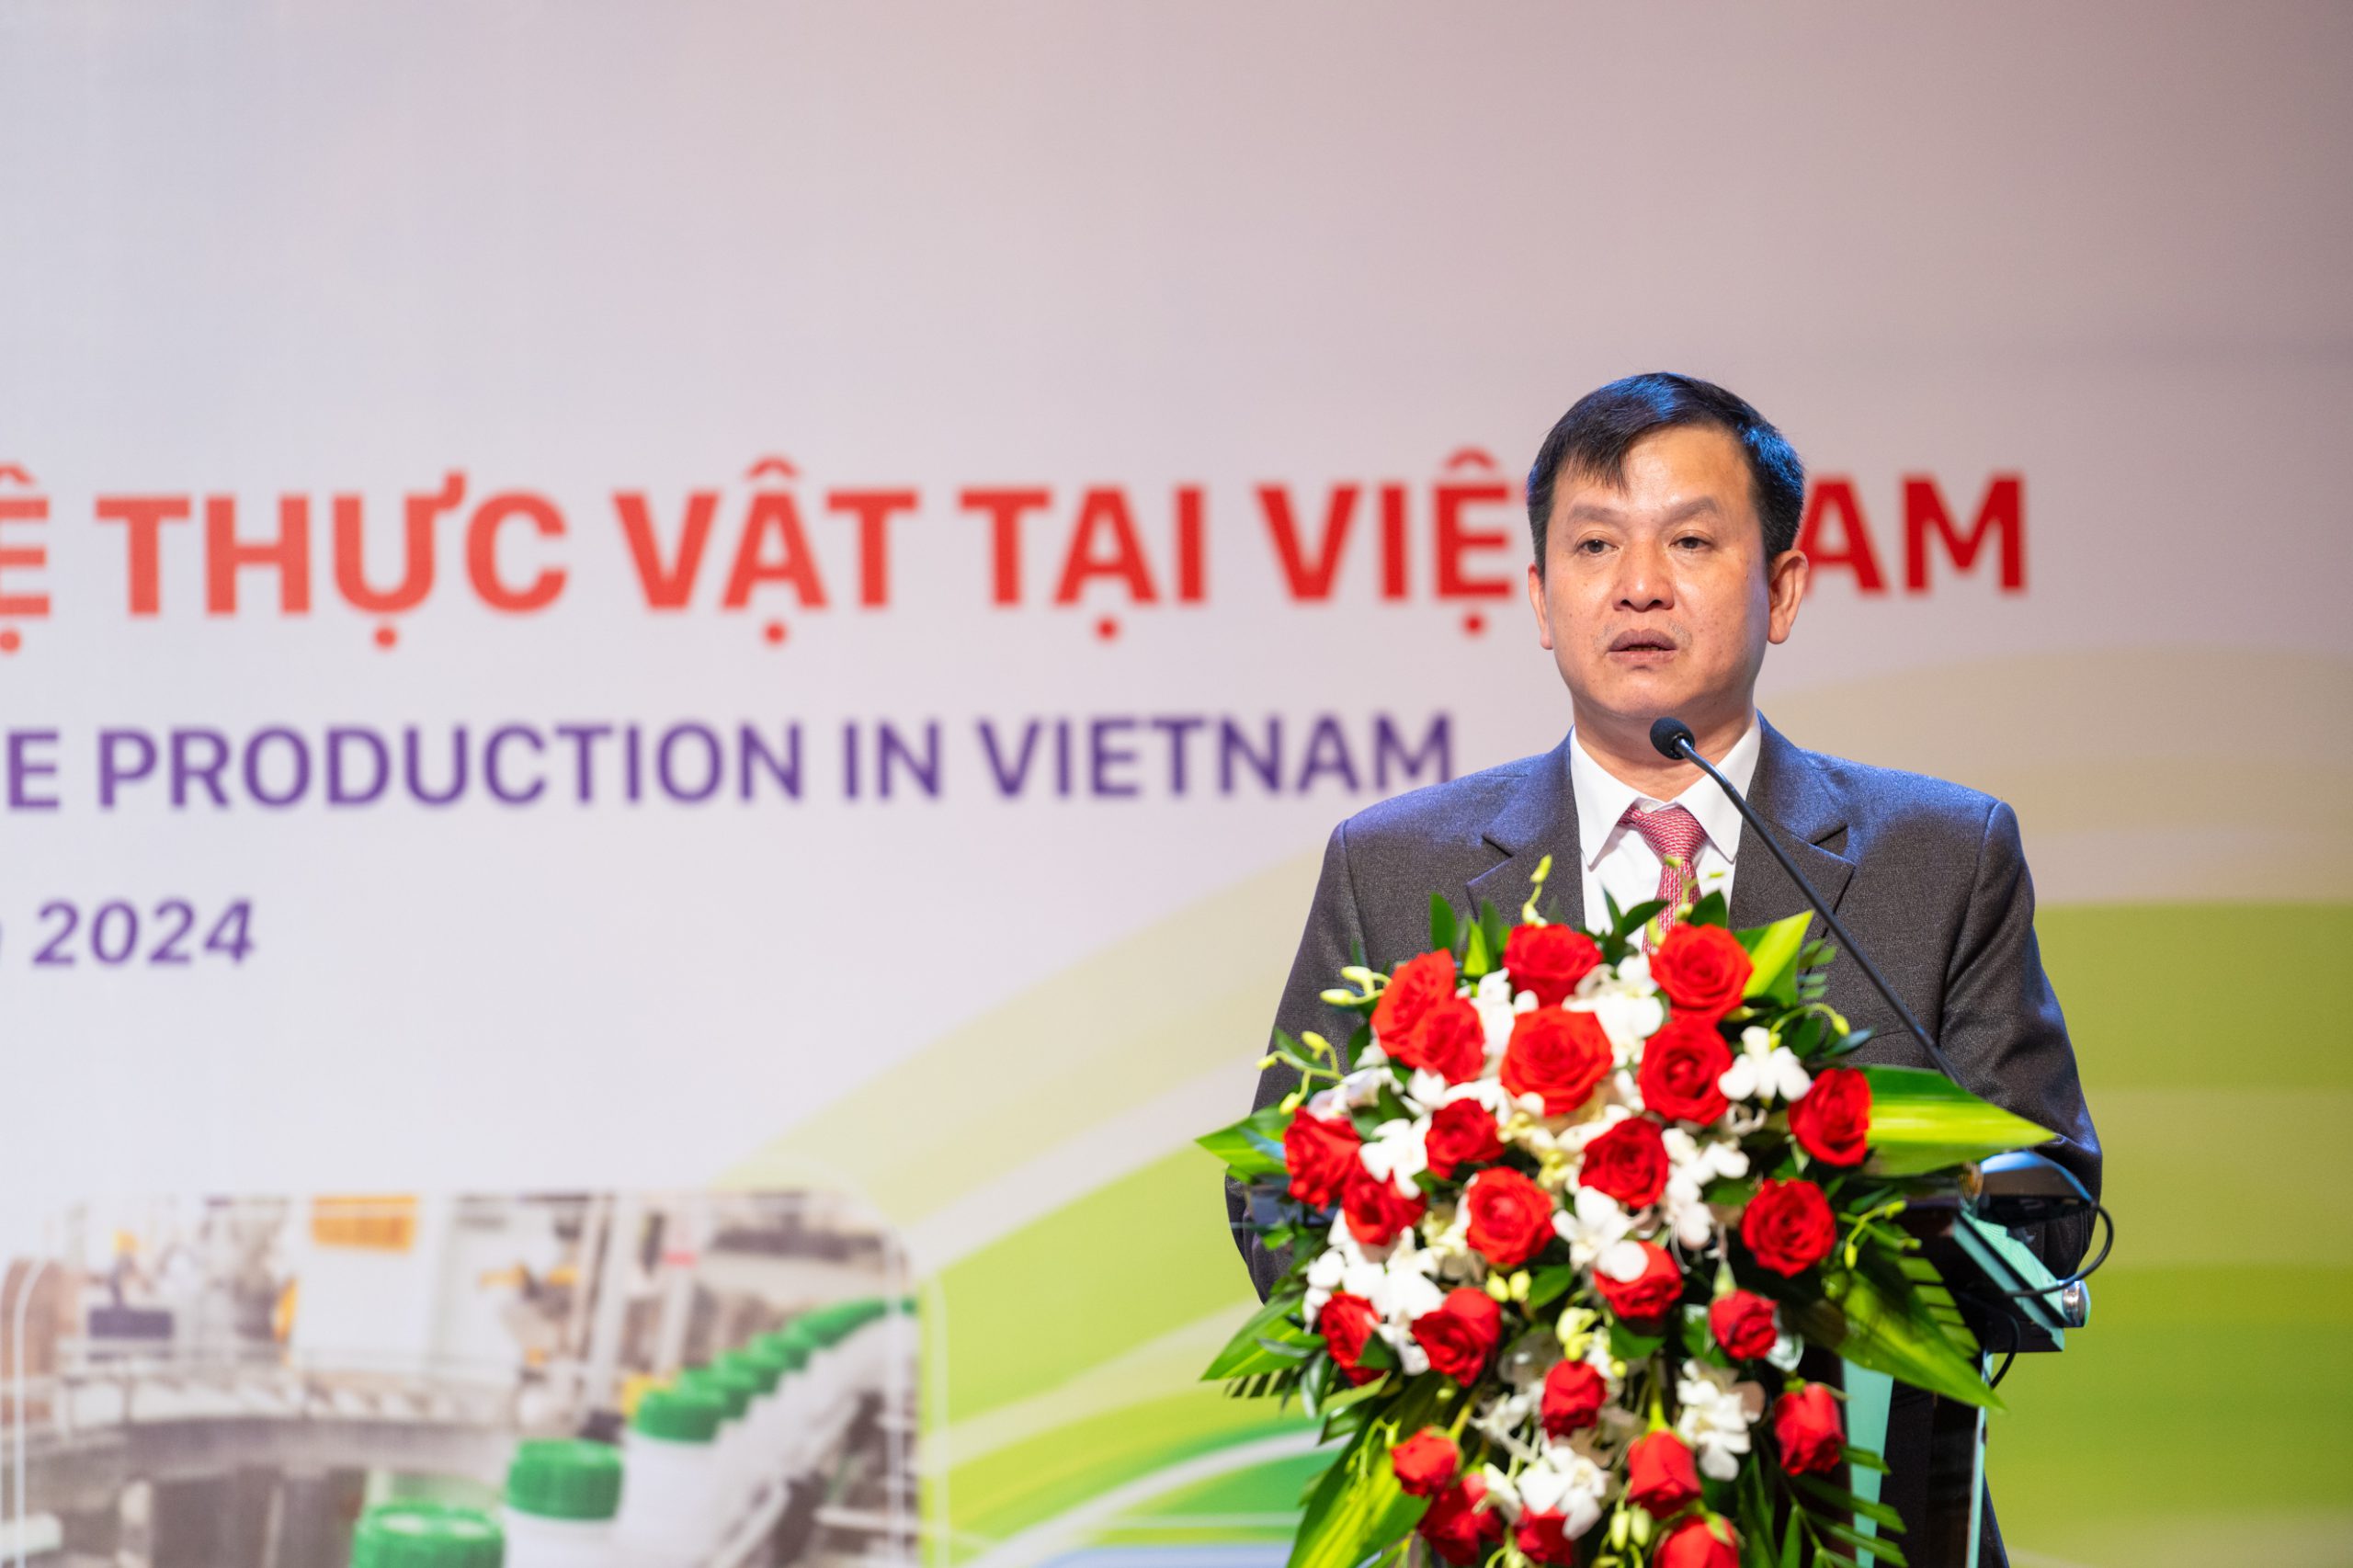 70% lượng thuốc bảo vệ thực vật Việt Nam nhập khẩu là từ Trung Quốc, Cục BVTV bàn cách thúc đẩy sản xuất trong nước